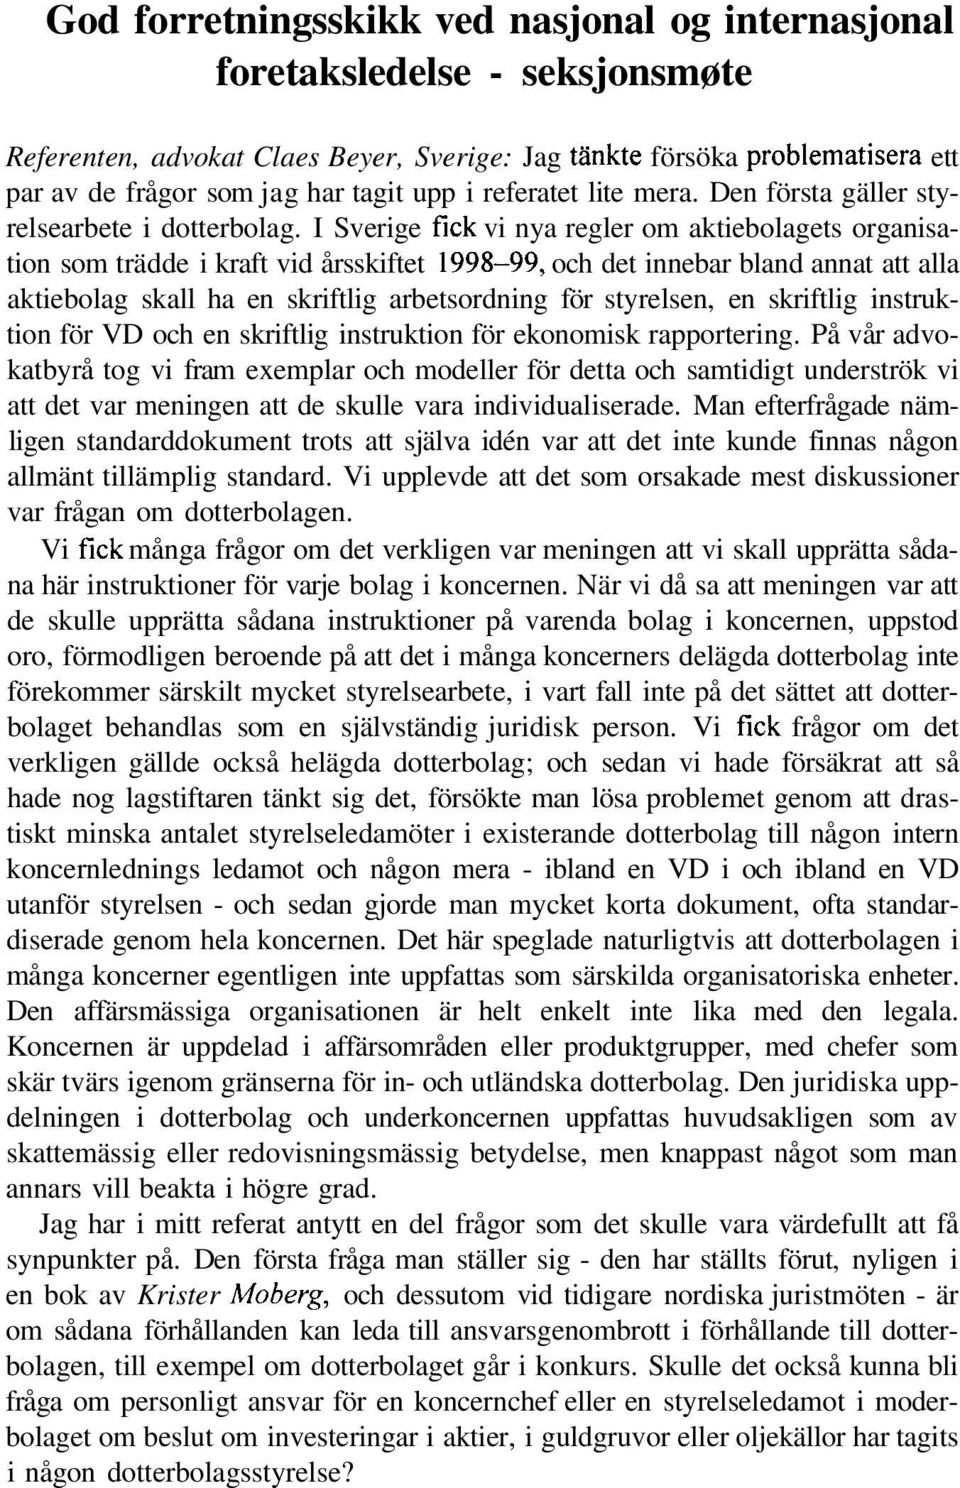 I Sverige fick vi nya regler om aktiebolagets organisation som trädde i kraft vid årsskiftet 1998-99, och det innebar bland annat att alla aktiebolag skall ha en skriftlig arbetsordning för